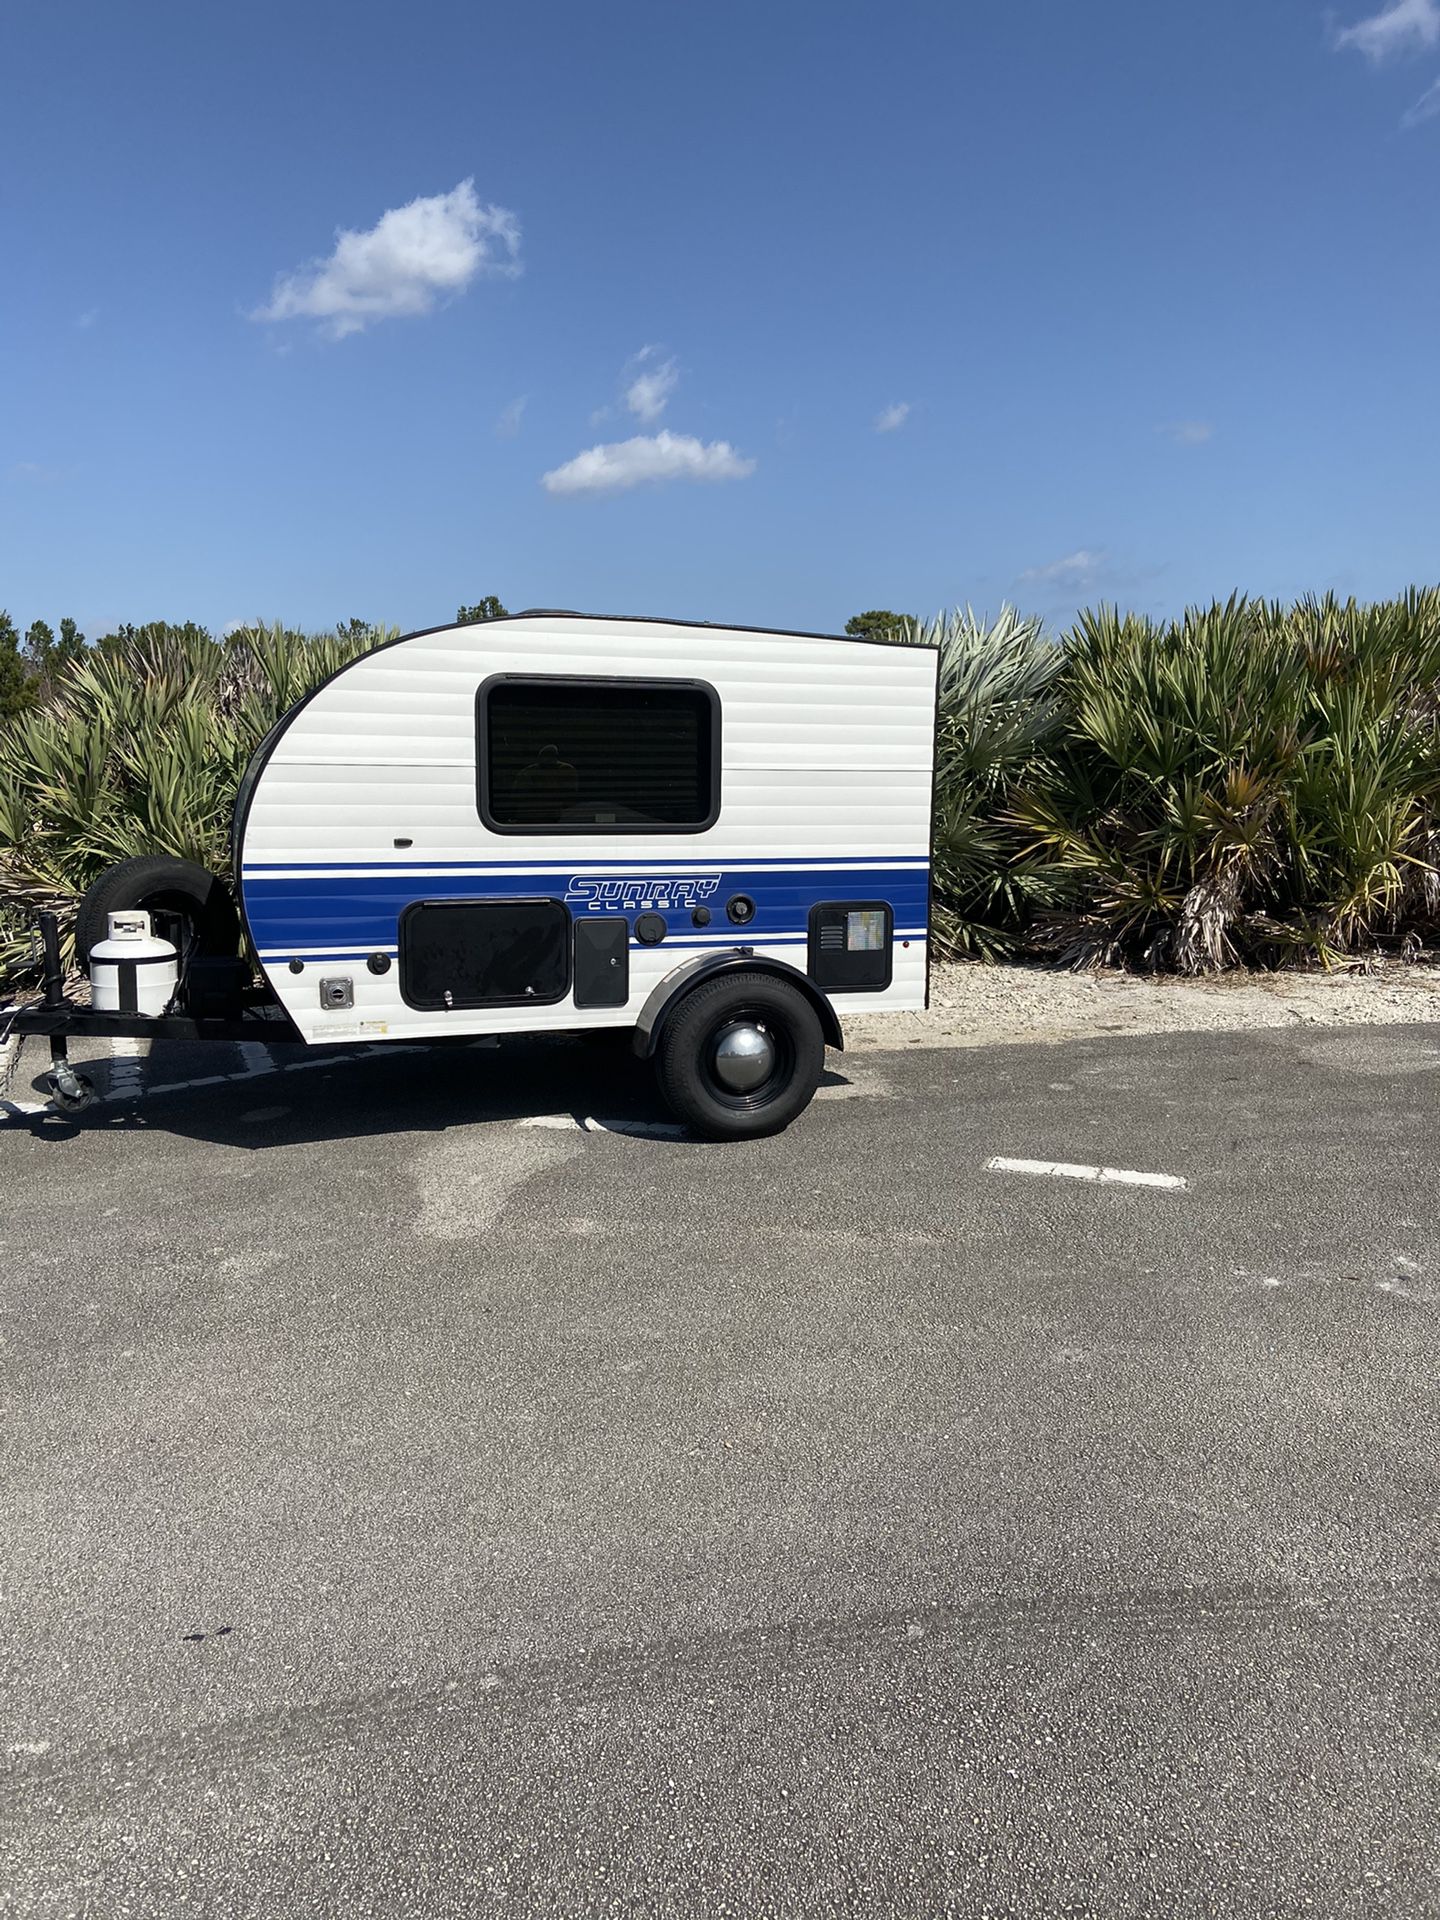 2019 travel trailer camper